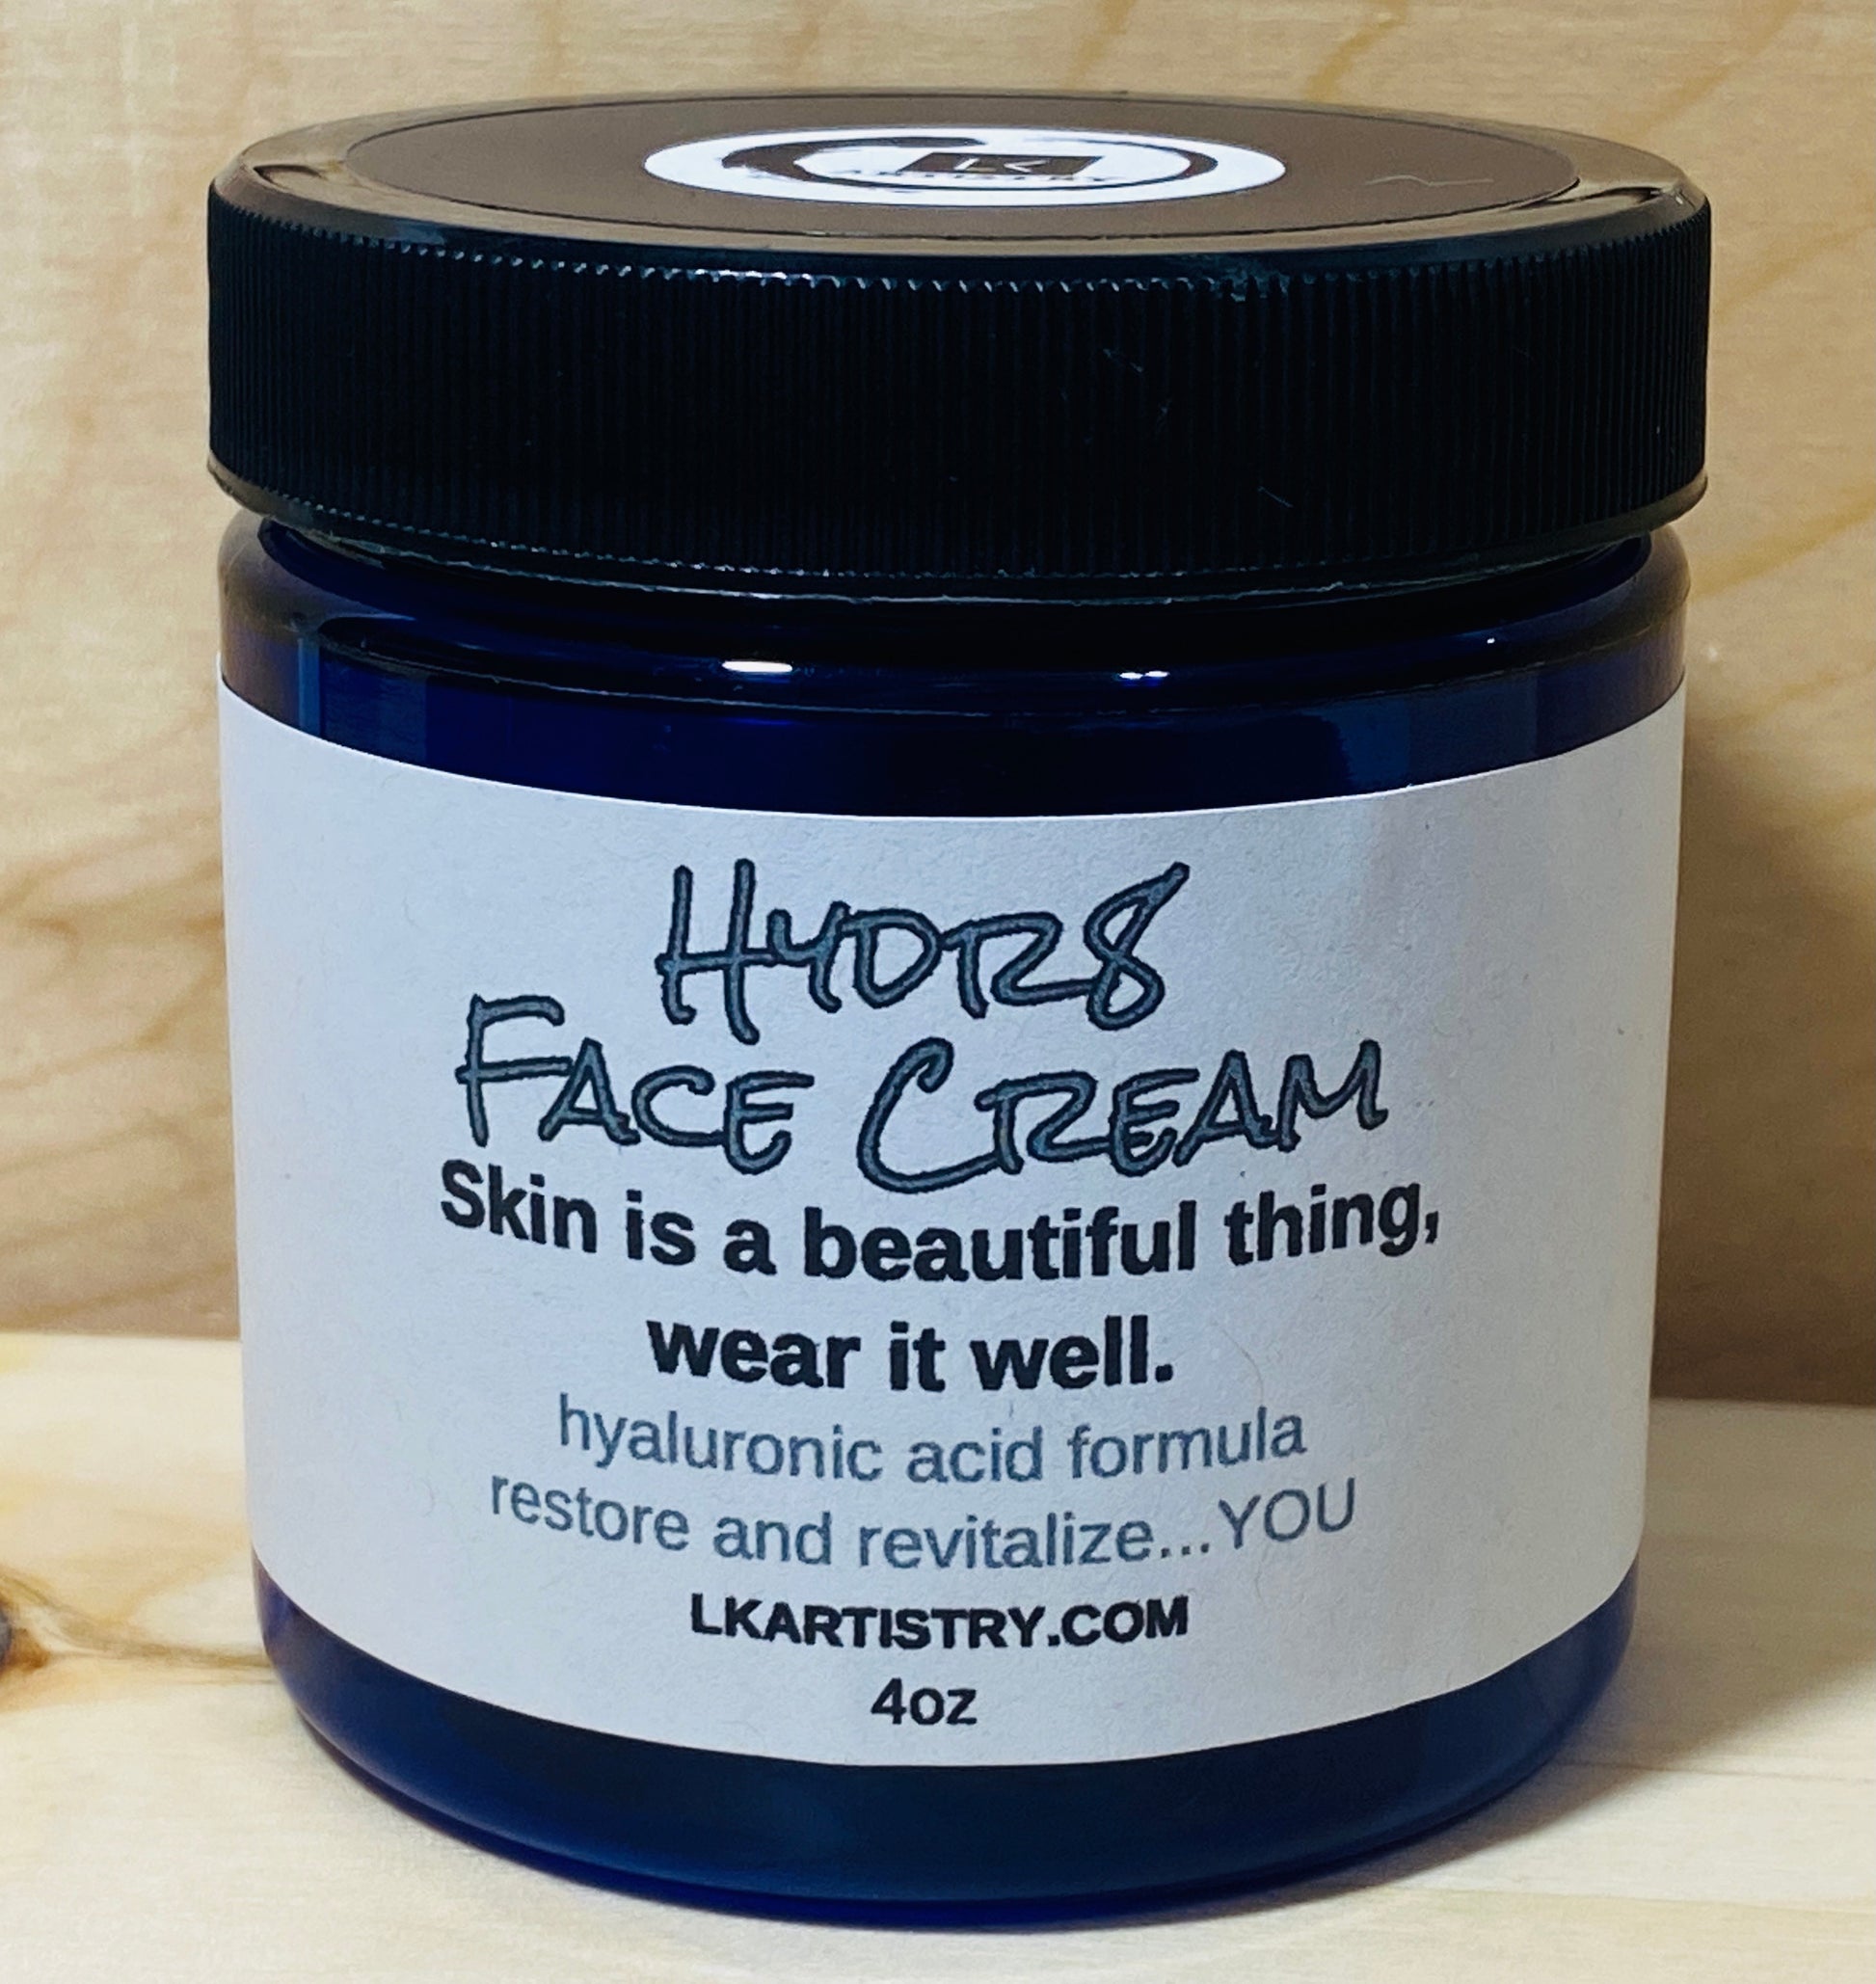 Hyaluronic Acid Face Cream! Hrdr8 reduce wrinkles. dry skin. LK Artistry